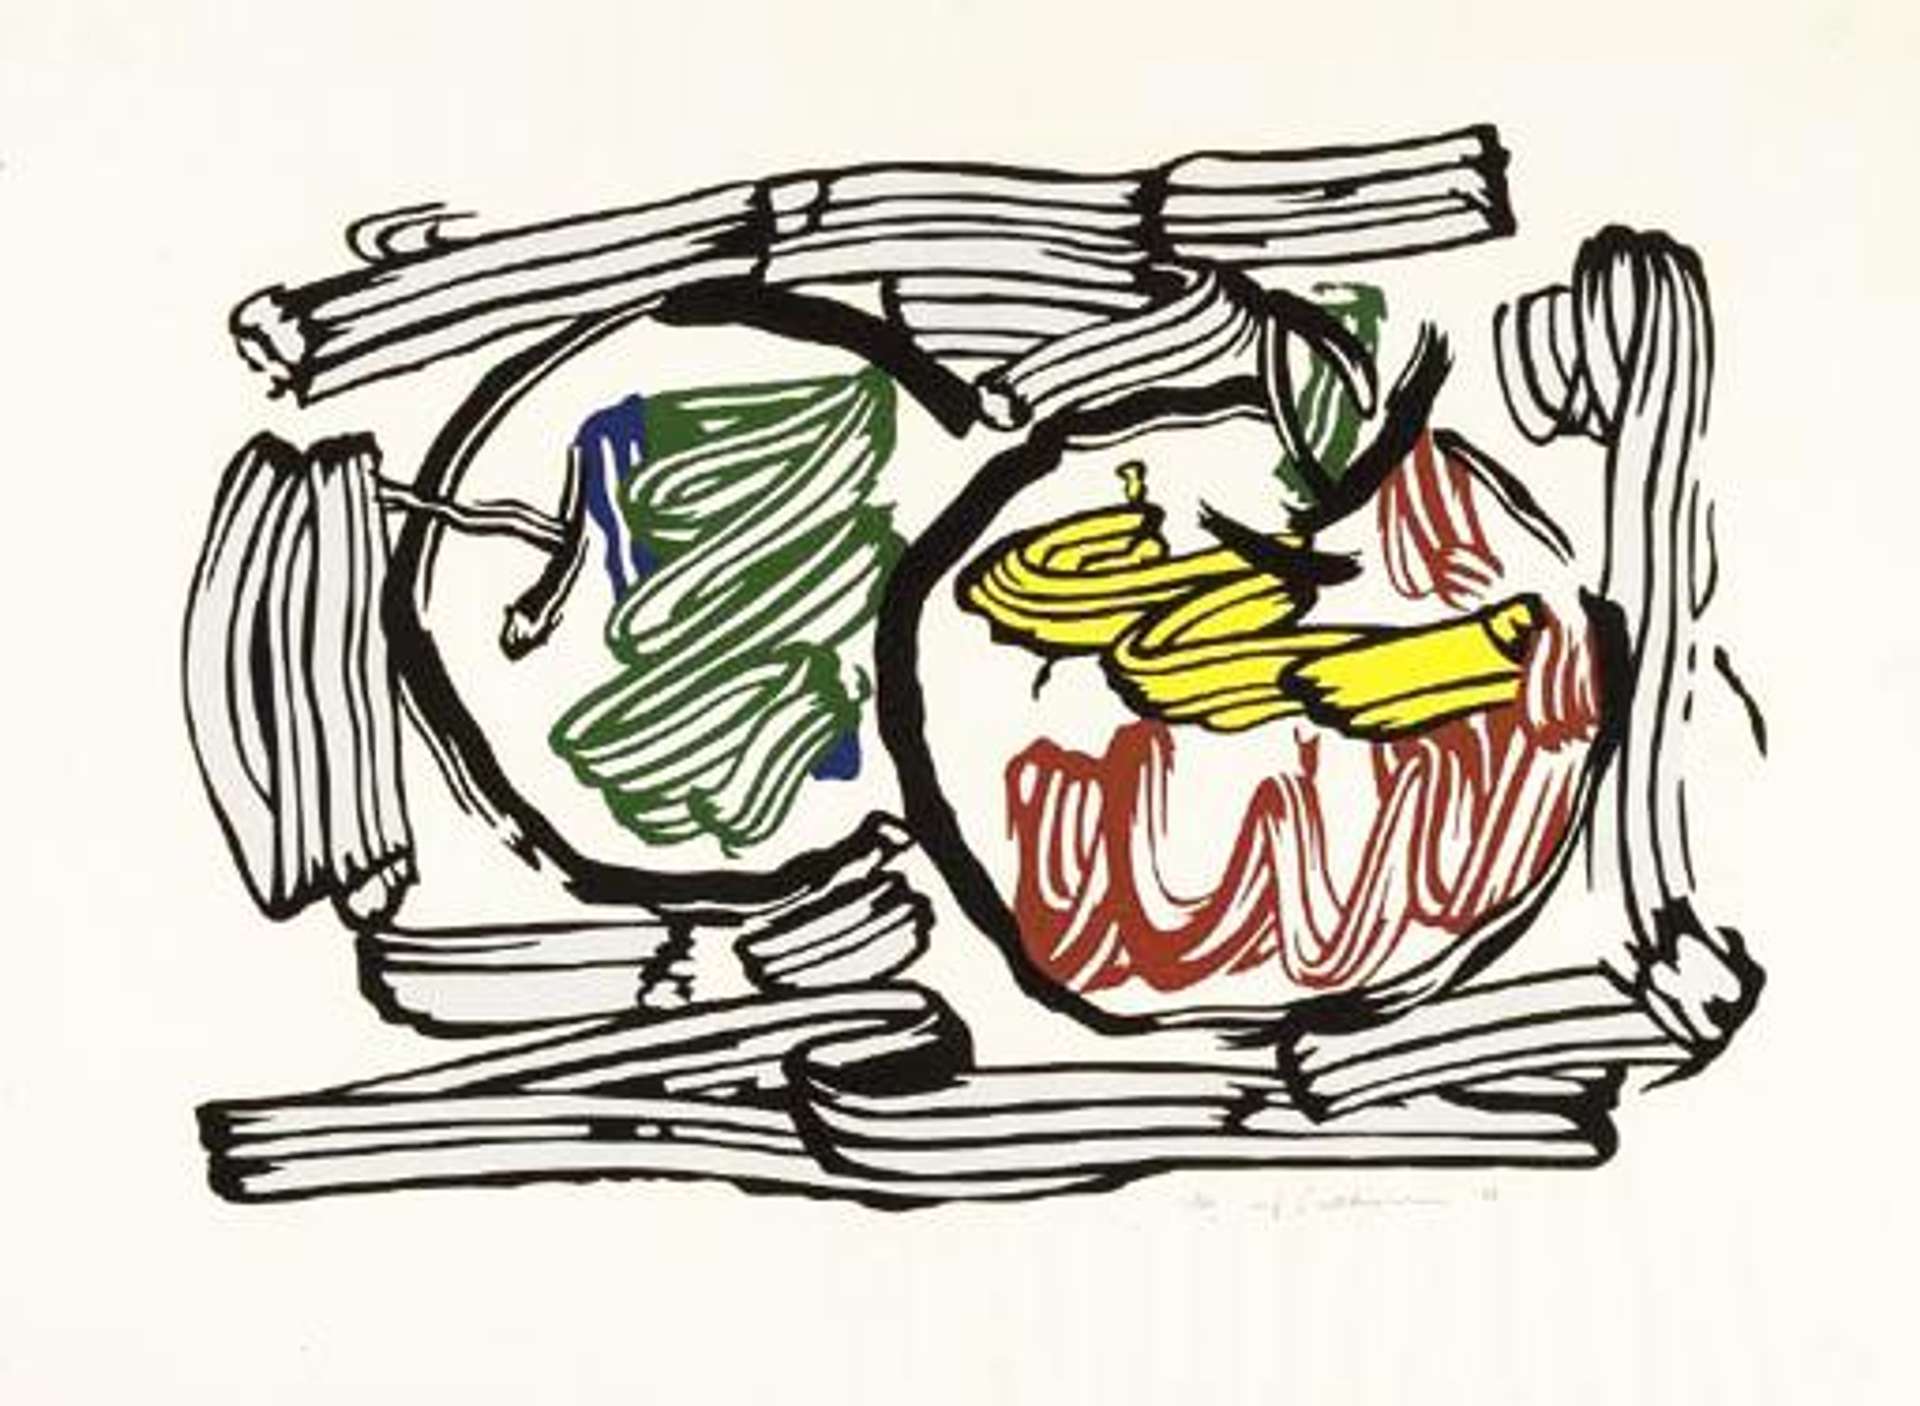 Roy Lichtenstein: Two Apples - Signed Print